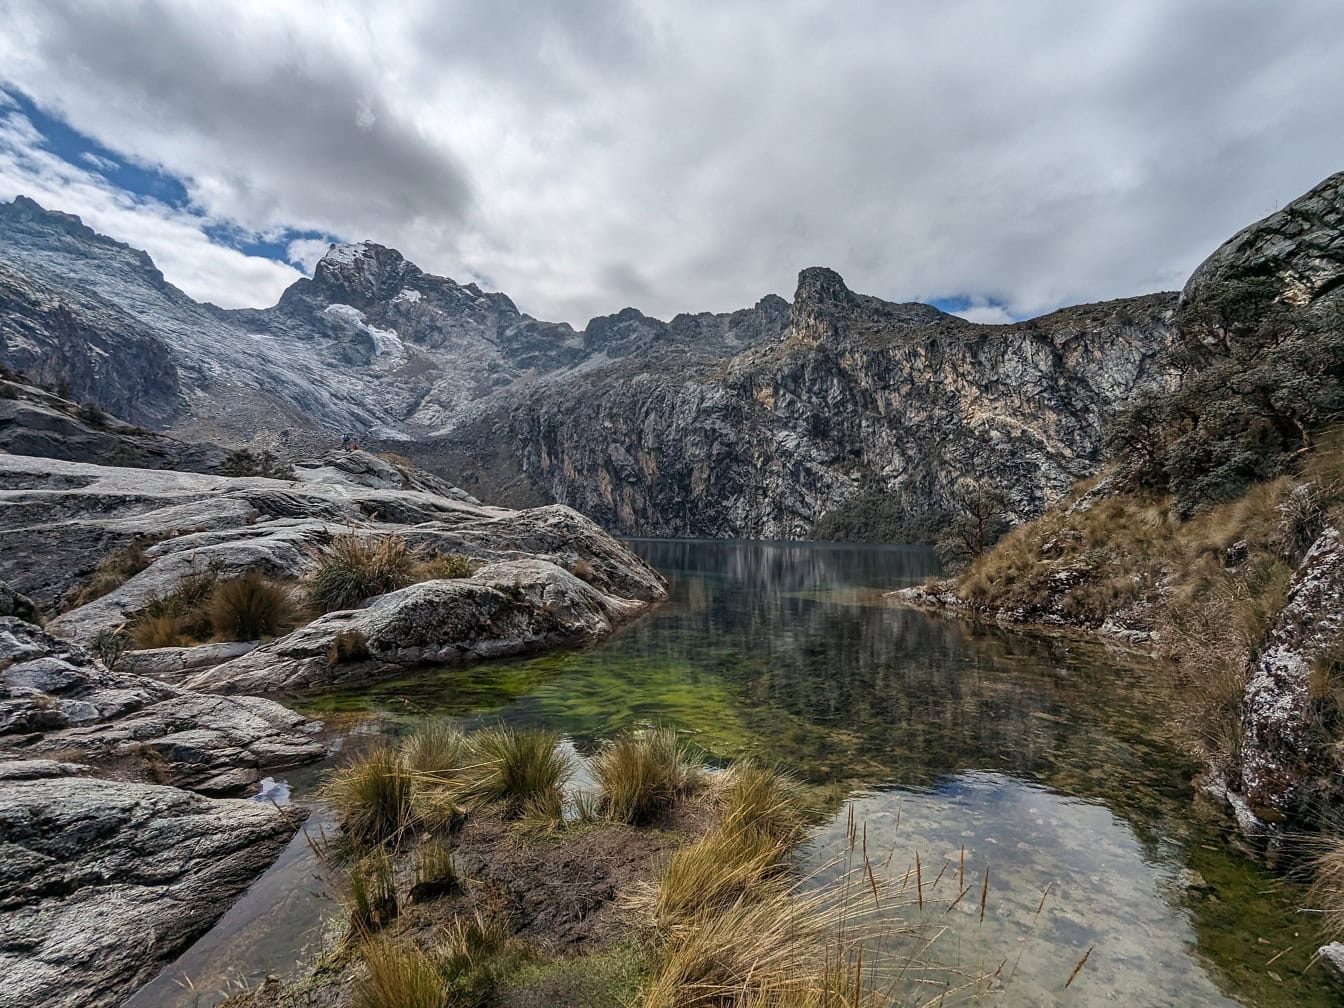 Landskap av en Churup-sjö och snöiga bergstoppar i naturpark i Anderna nära Huaraz i Peru, en naturskön vy över Latinamerika